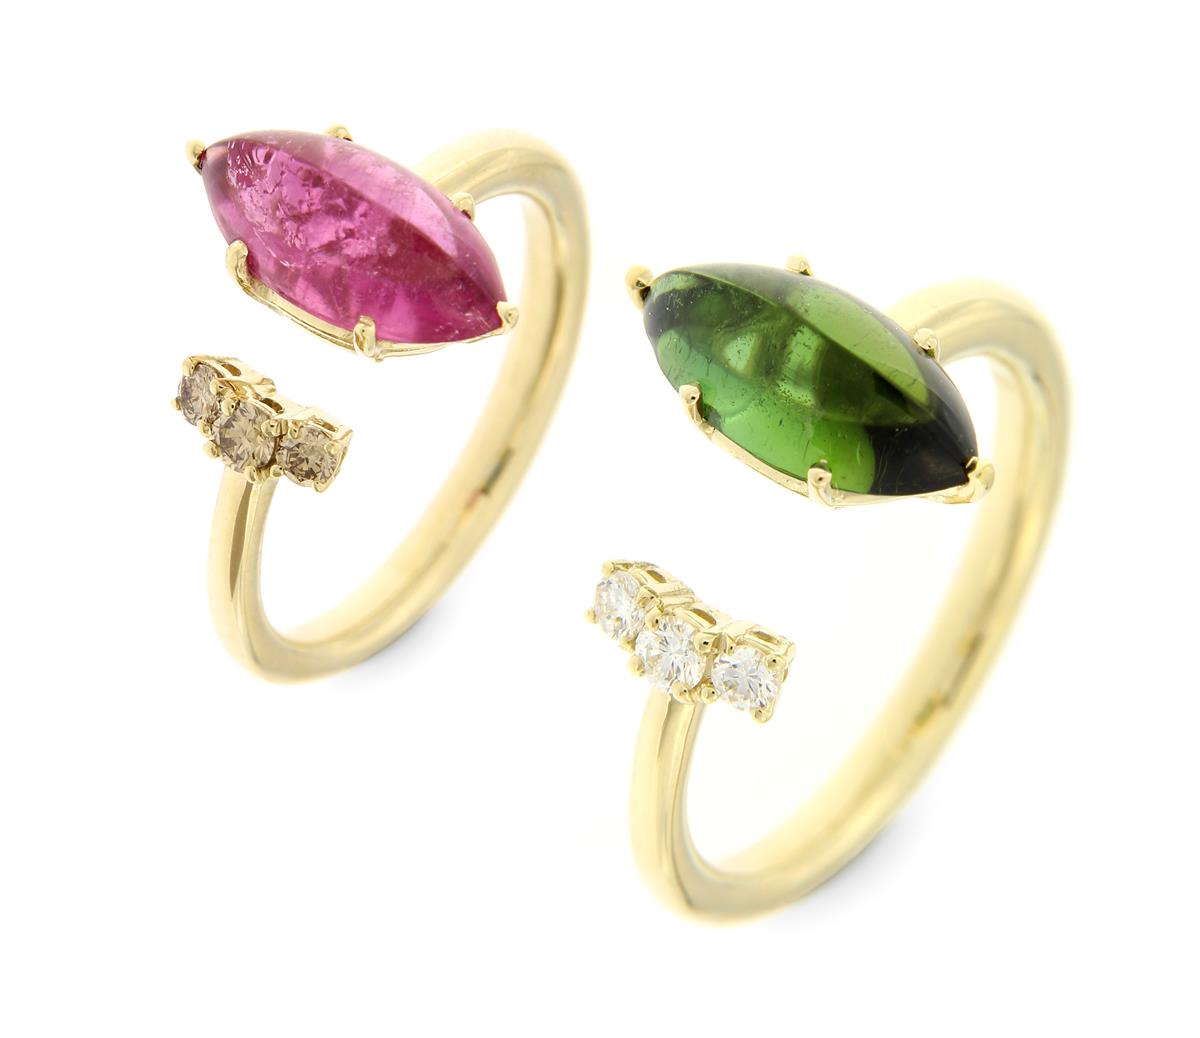 Katie g. Jewellery_Colour Burst Ringe mit Turmalinen und Brillanten in unterschiedlichen Farben mit 14kt. Gelb- bzw. Champagnergold Schiene